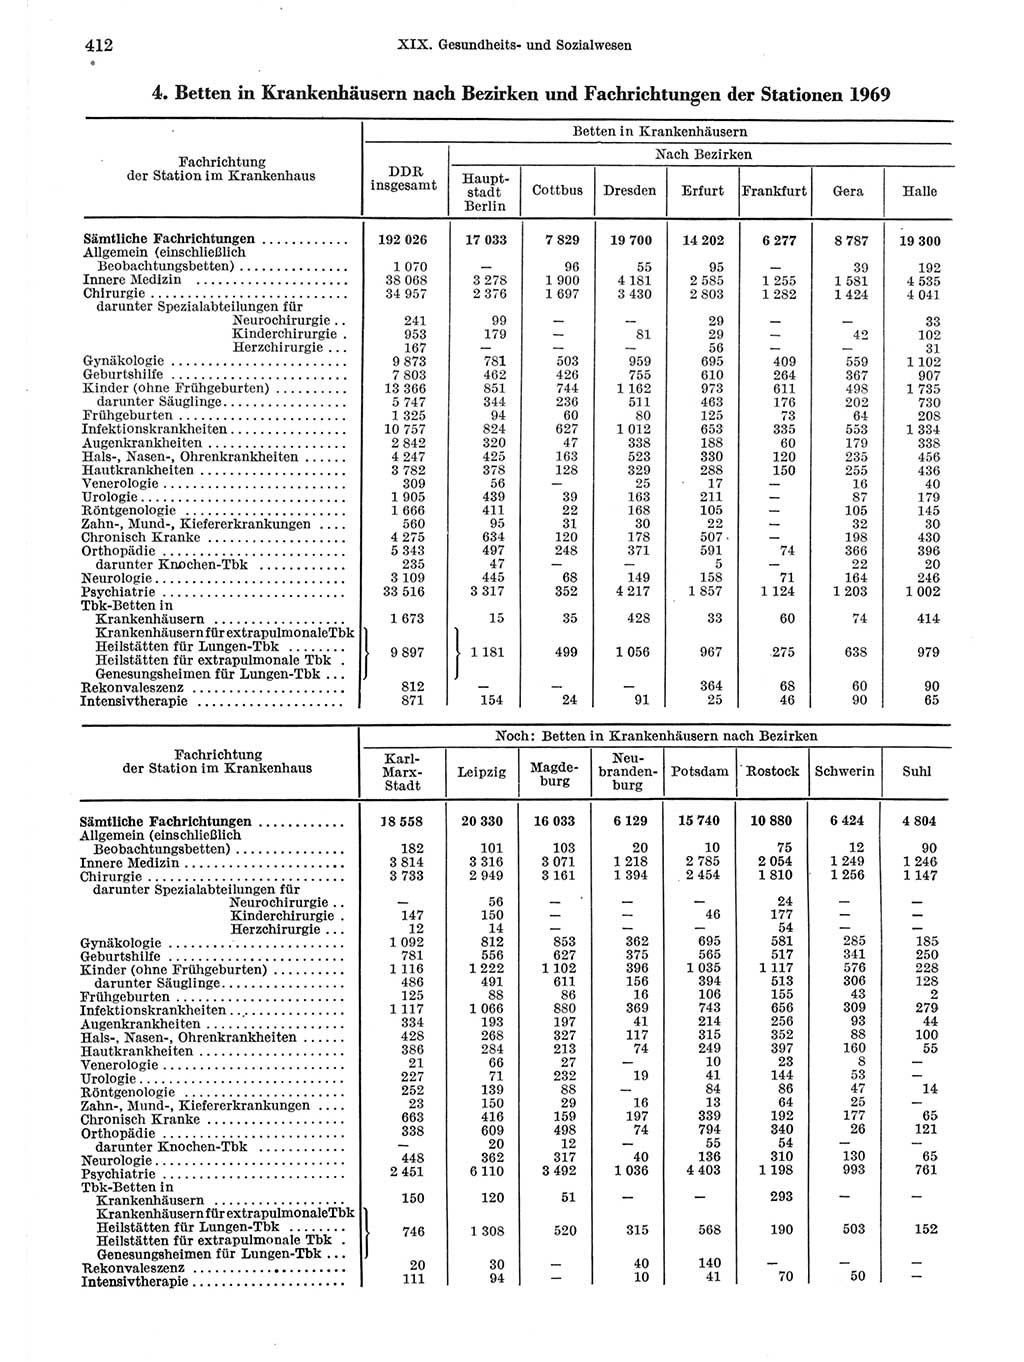 Statistisches Jahrbuch der Deutschen Demokratischen Republik (DDR) 1971, Seite 412 (Stat. Jb. DDR 1971, S. 412)